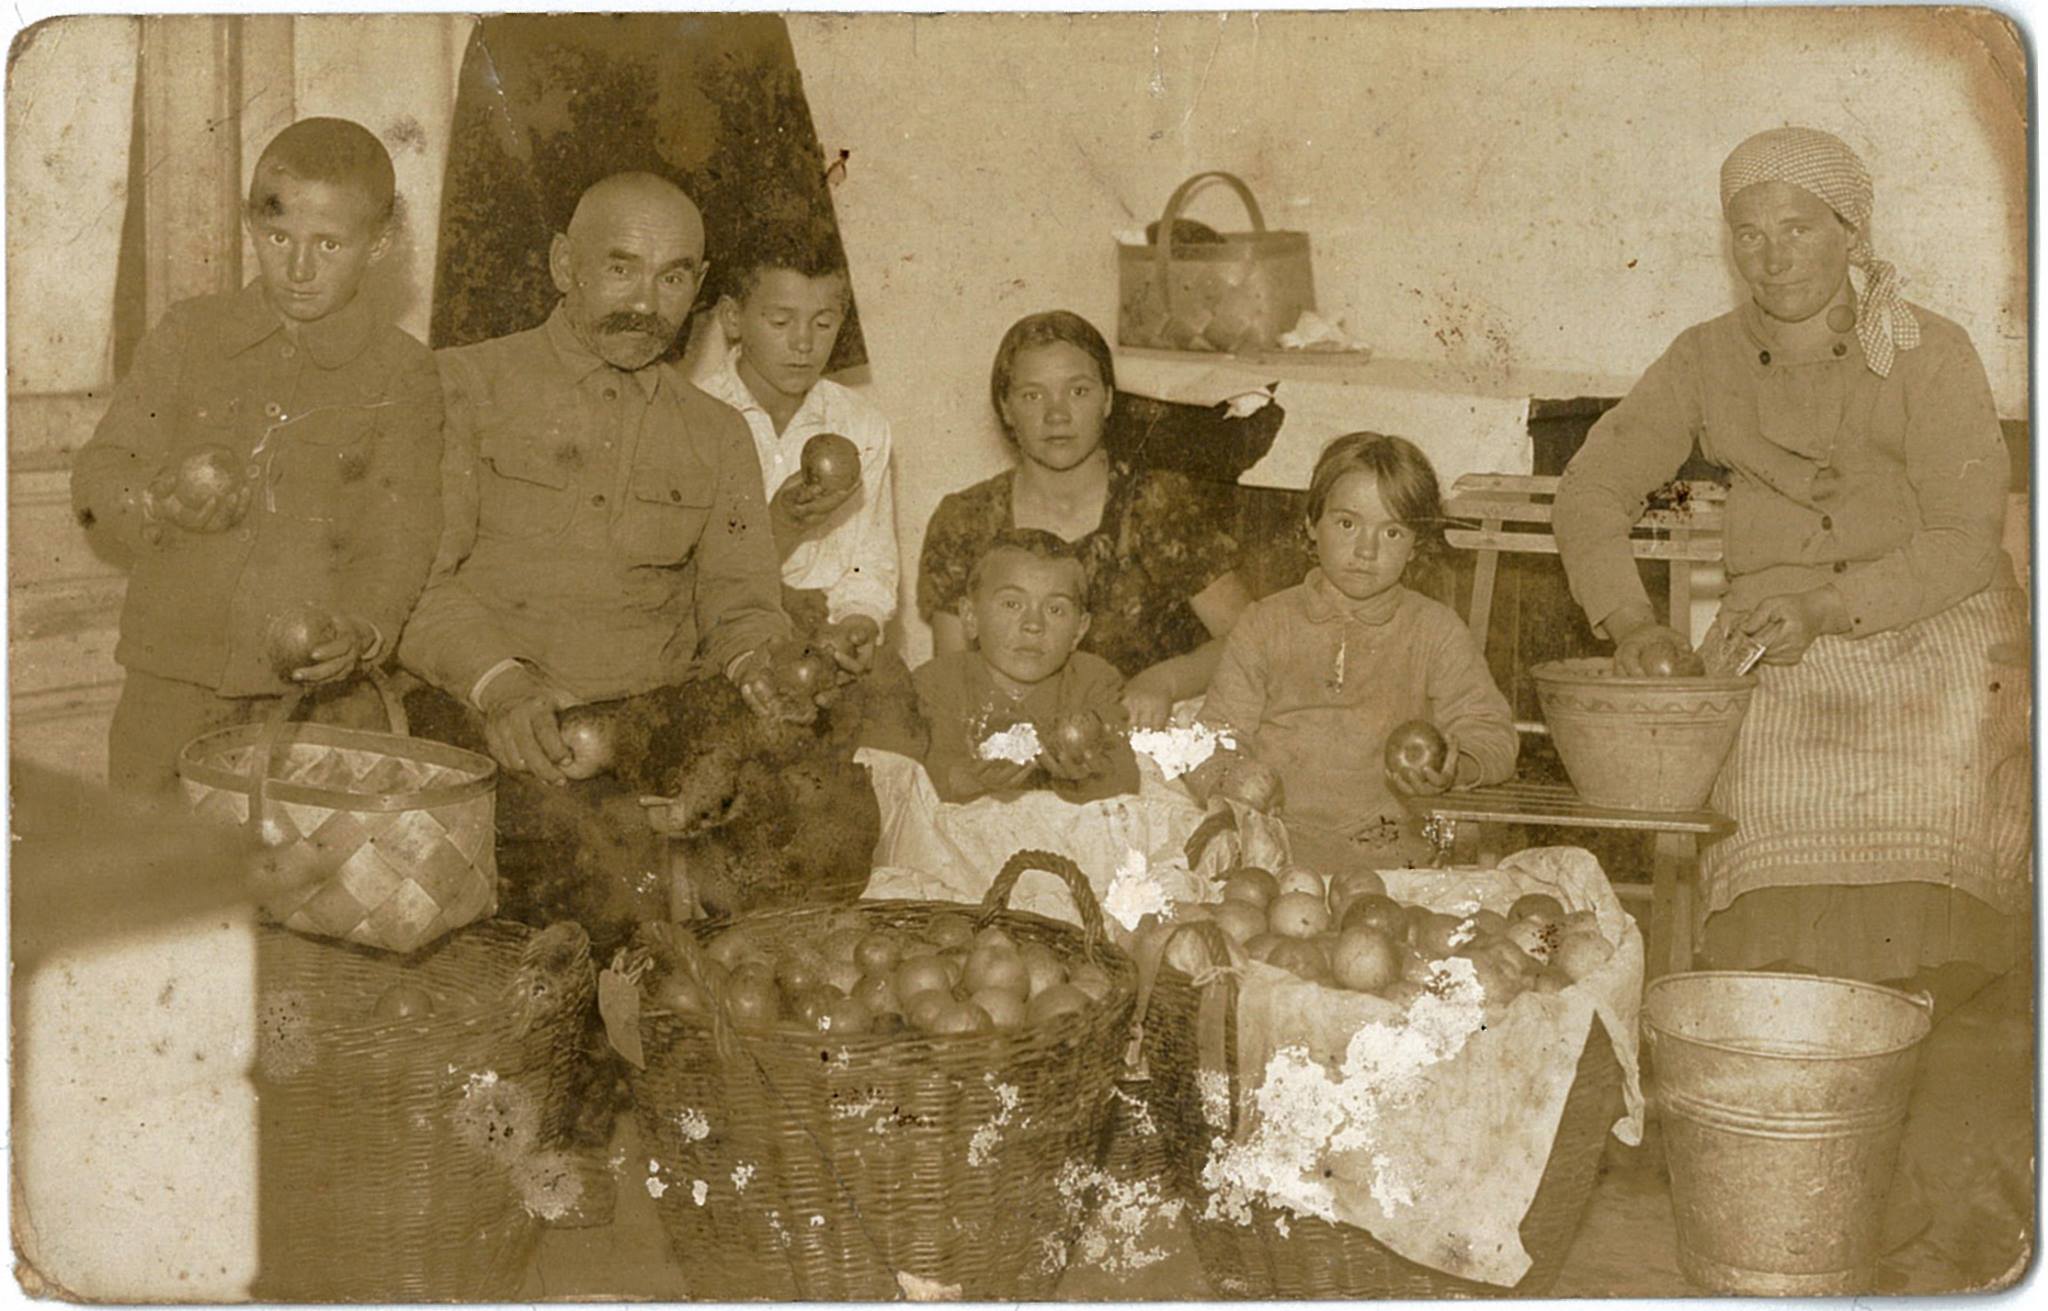 Koroluk family in Volyn